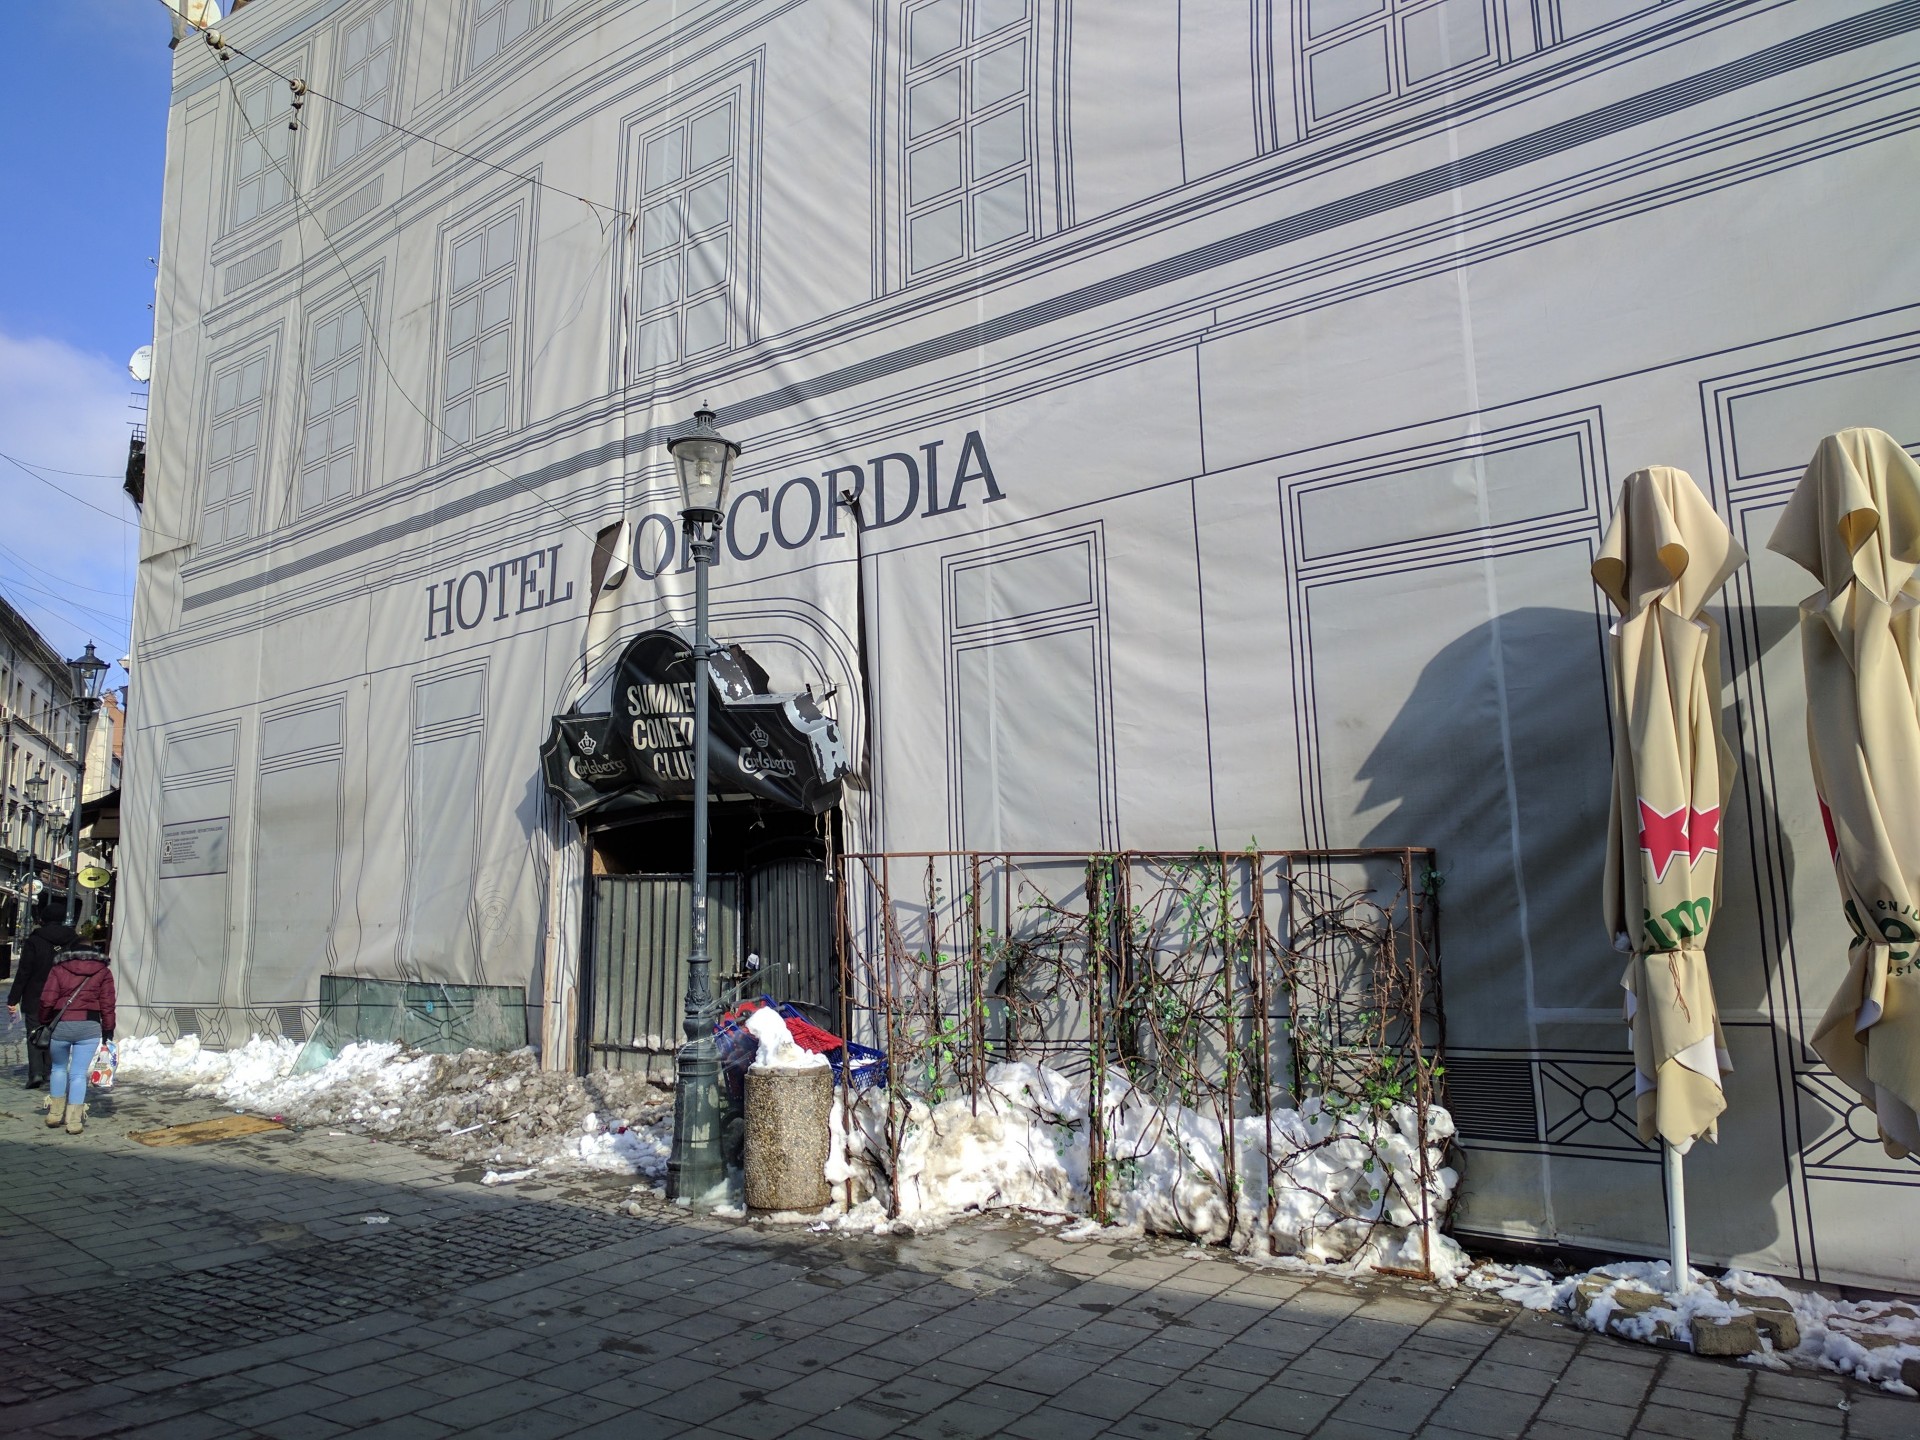 Hotelul Concordia - aici s-a hotărât Unirea de la 24 ianuarie 1859